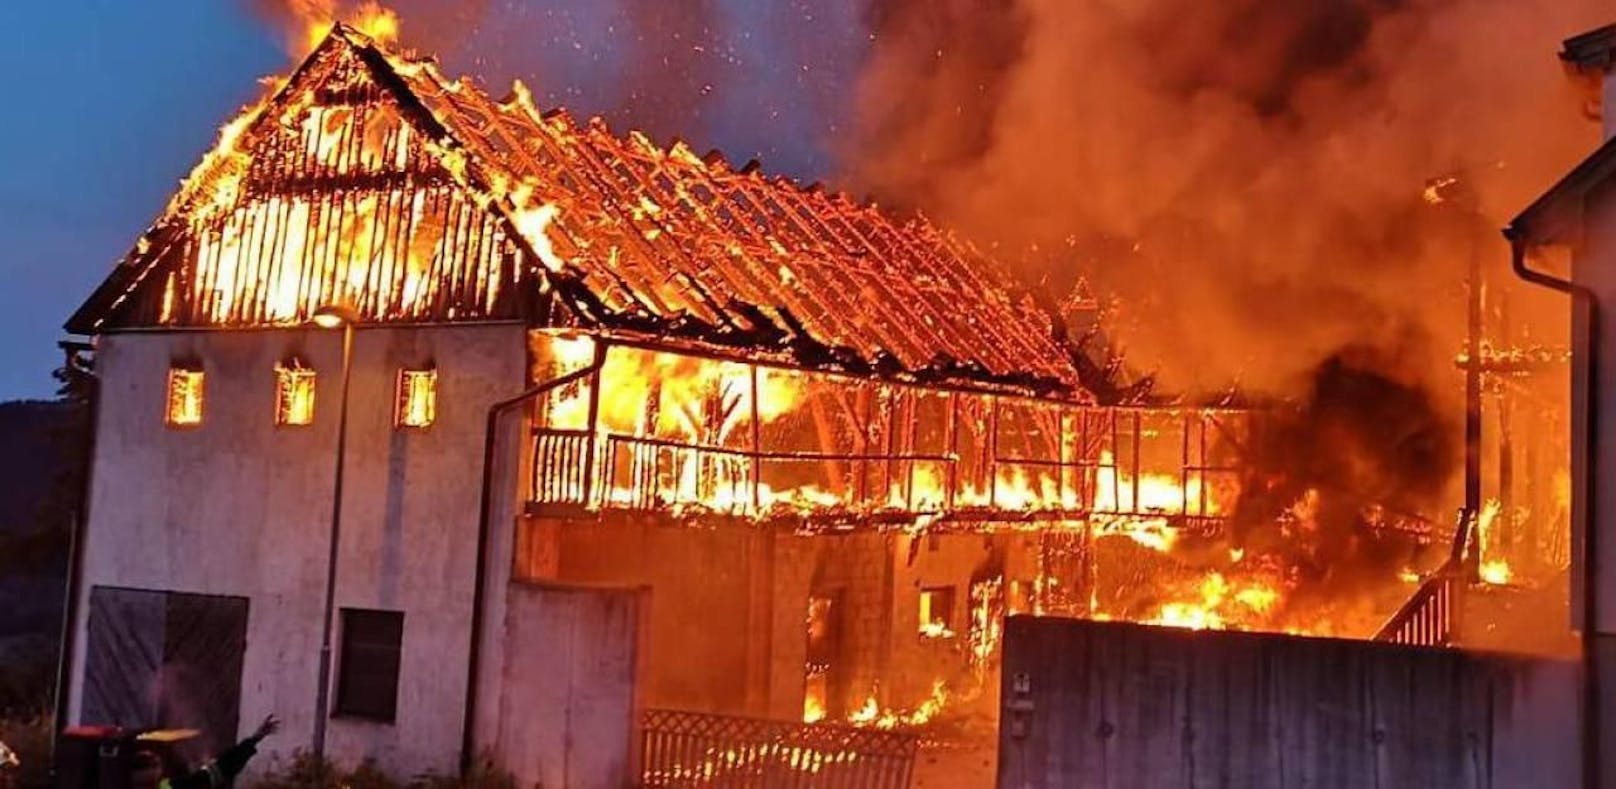 Stall ging in Flammen auf: Frau und Kind retteten sich